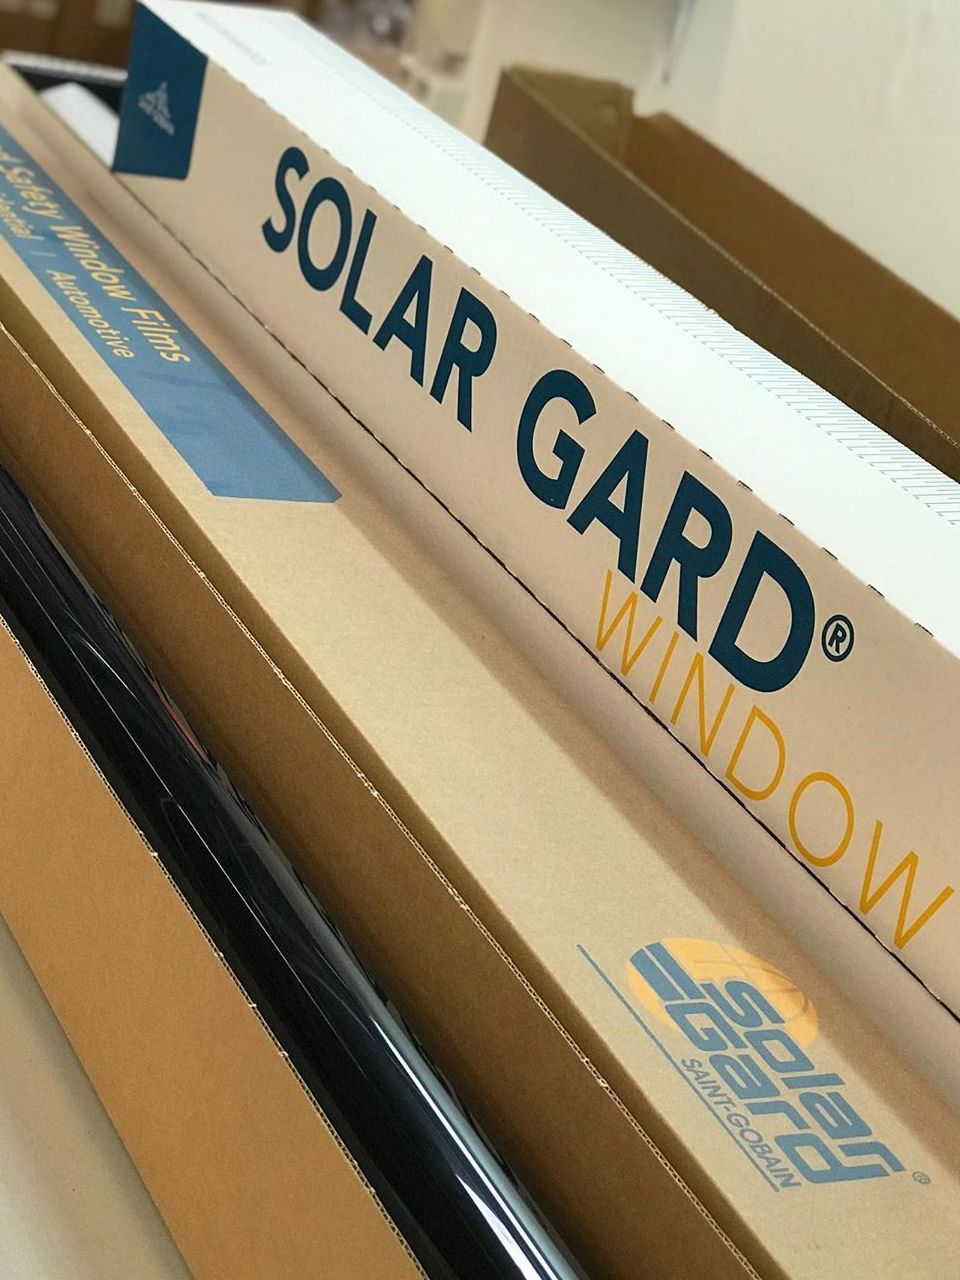 Solar Gard Magnum 2%. Самая темная тонировочная пленка